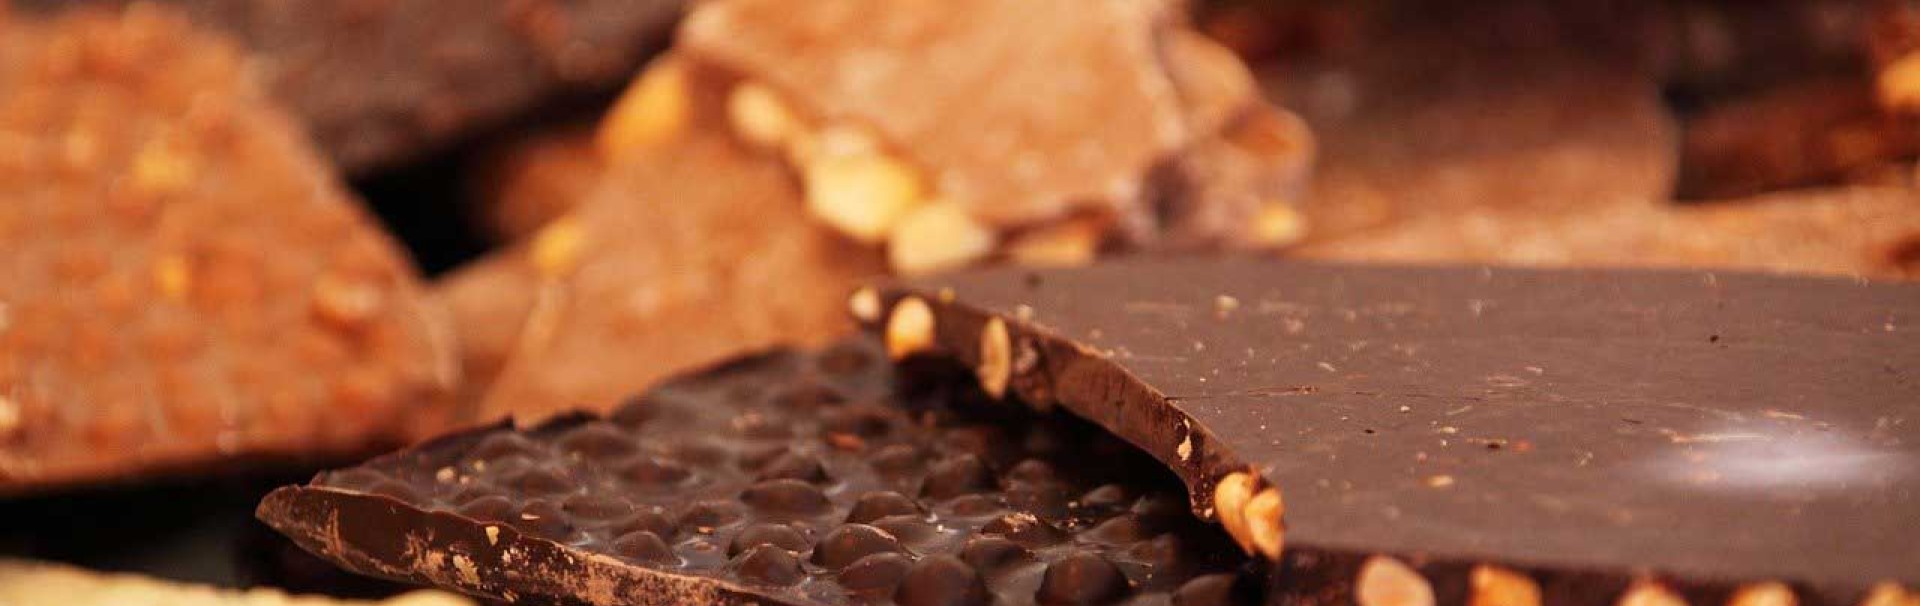 Verschiedene Sorten Schokolade liegen vermischt auf einem Haufen gestapelt. Die dünnen Tafeln sind teilweise gebrochen, sodass die Nussstücke im Inneren sichtbar sind